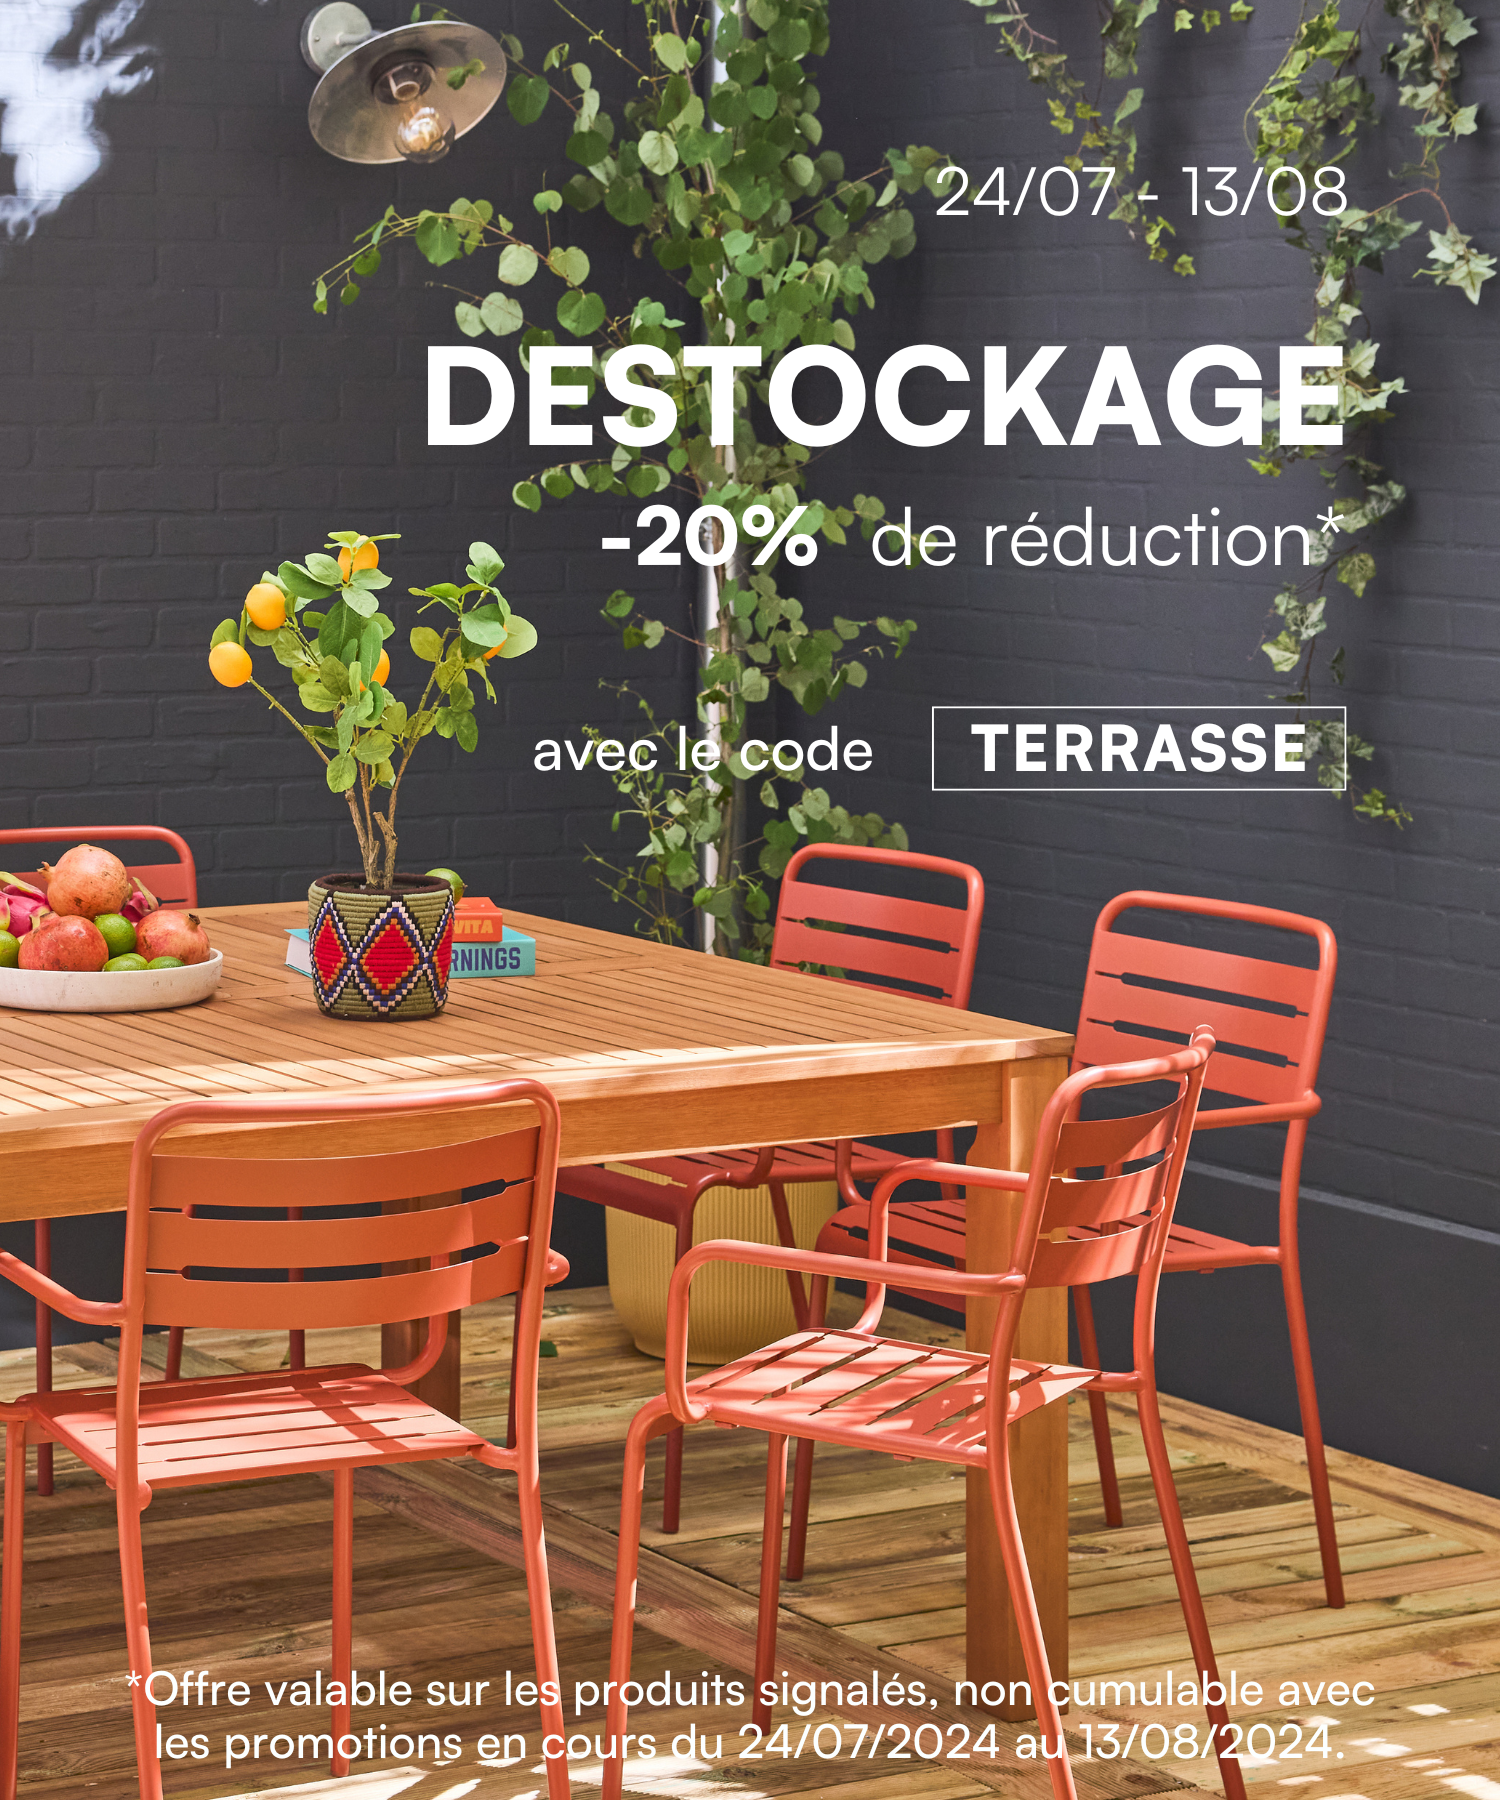 Destockage terrasse